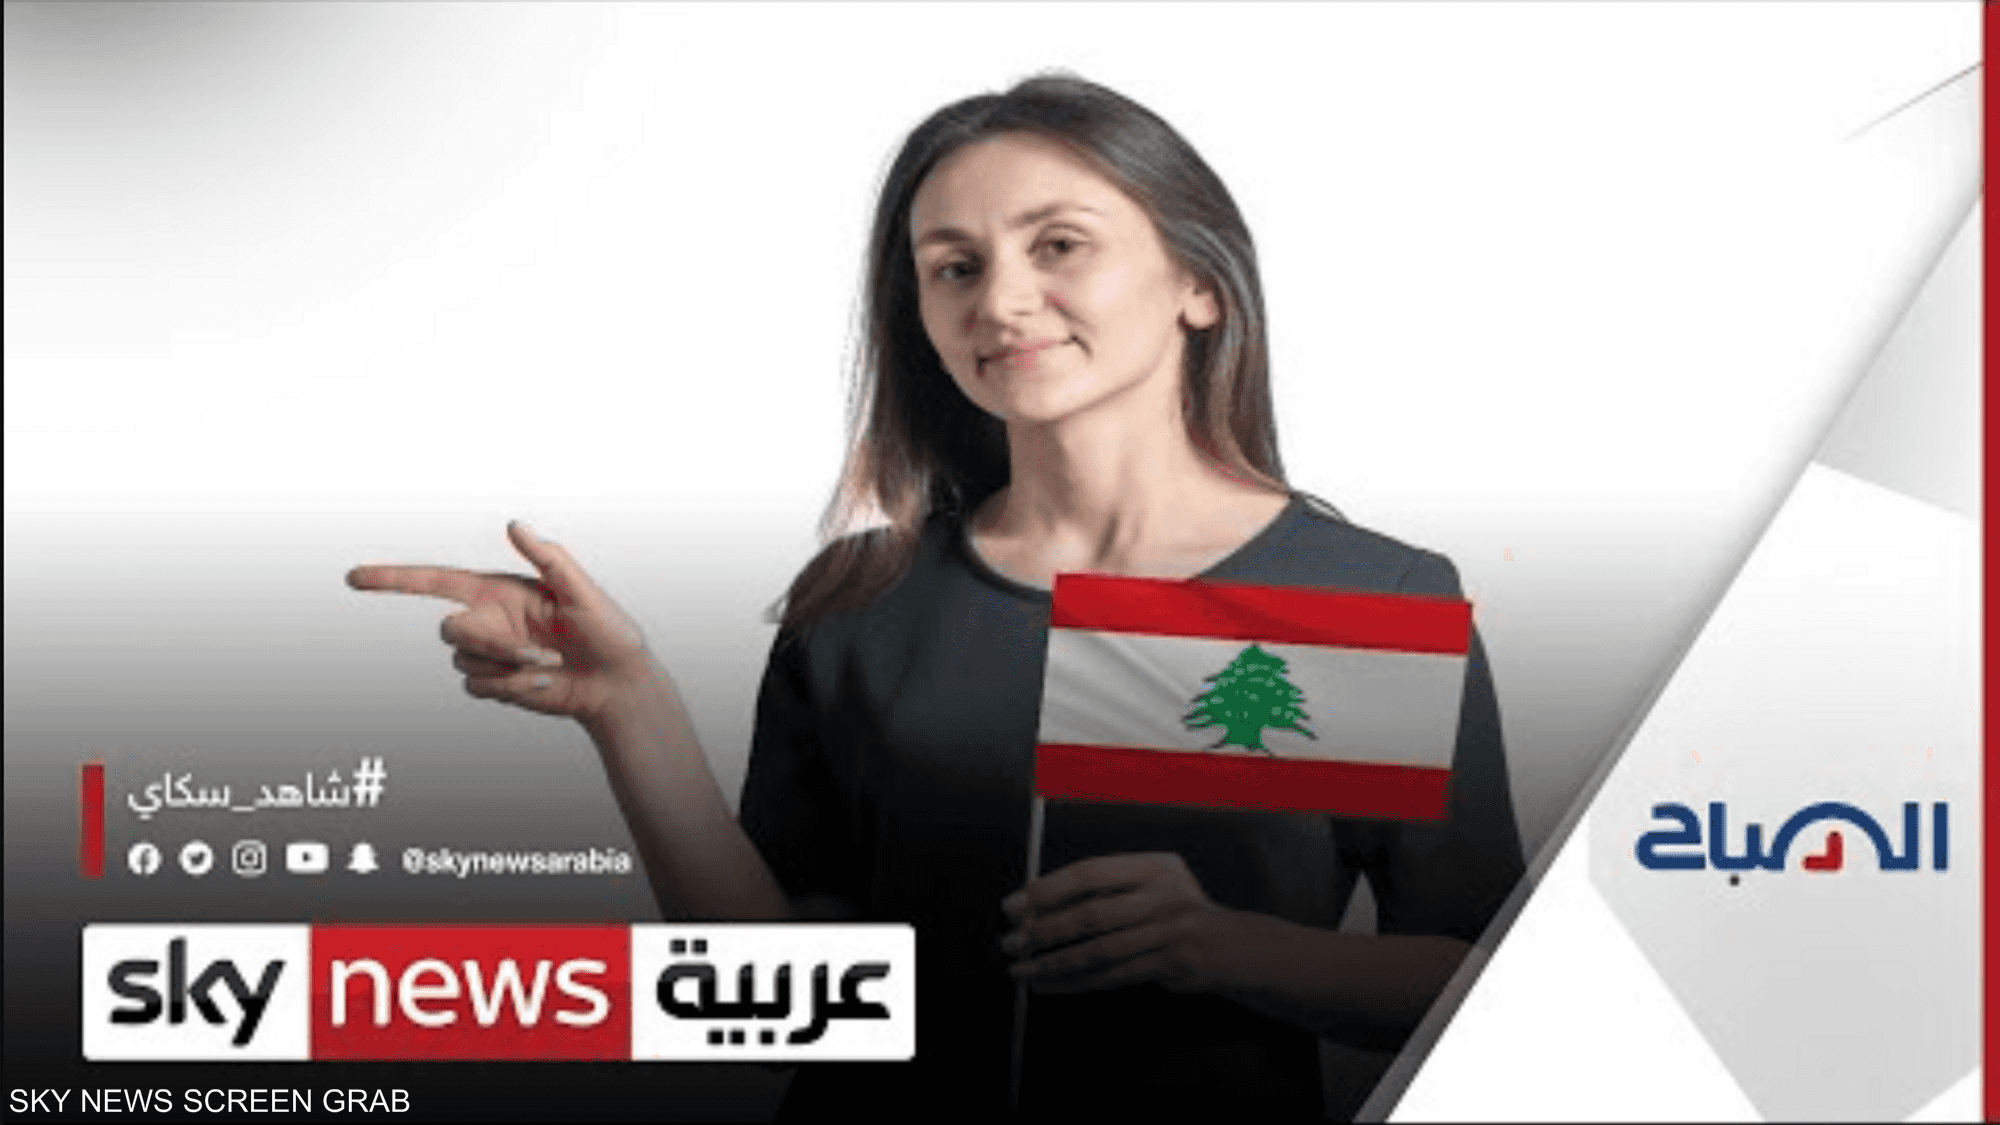 مؤتمر "أنا لبنانية عربية" ينطلق غدا في الجناح اللبناني